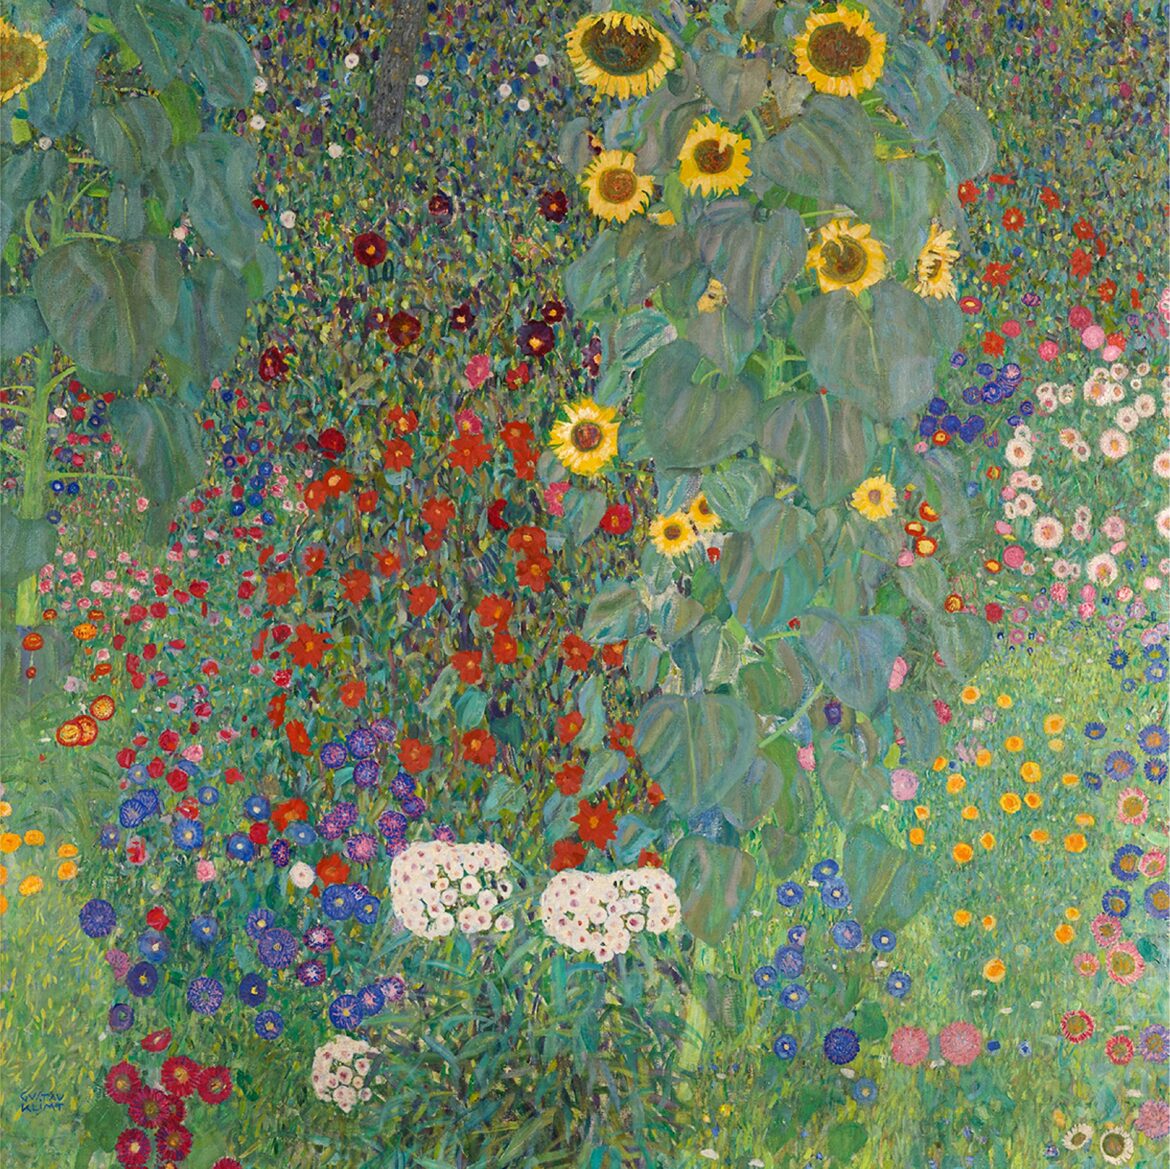 【無料壁紙】グスタフ・クリムト「ひまわりの咲く農園 (1907)」 / Gustav Klimt_Farm Garden with Sunflowers (1907)